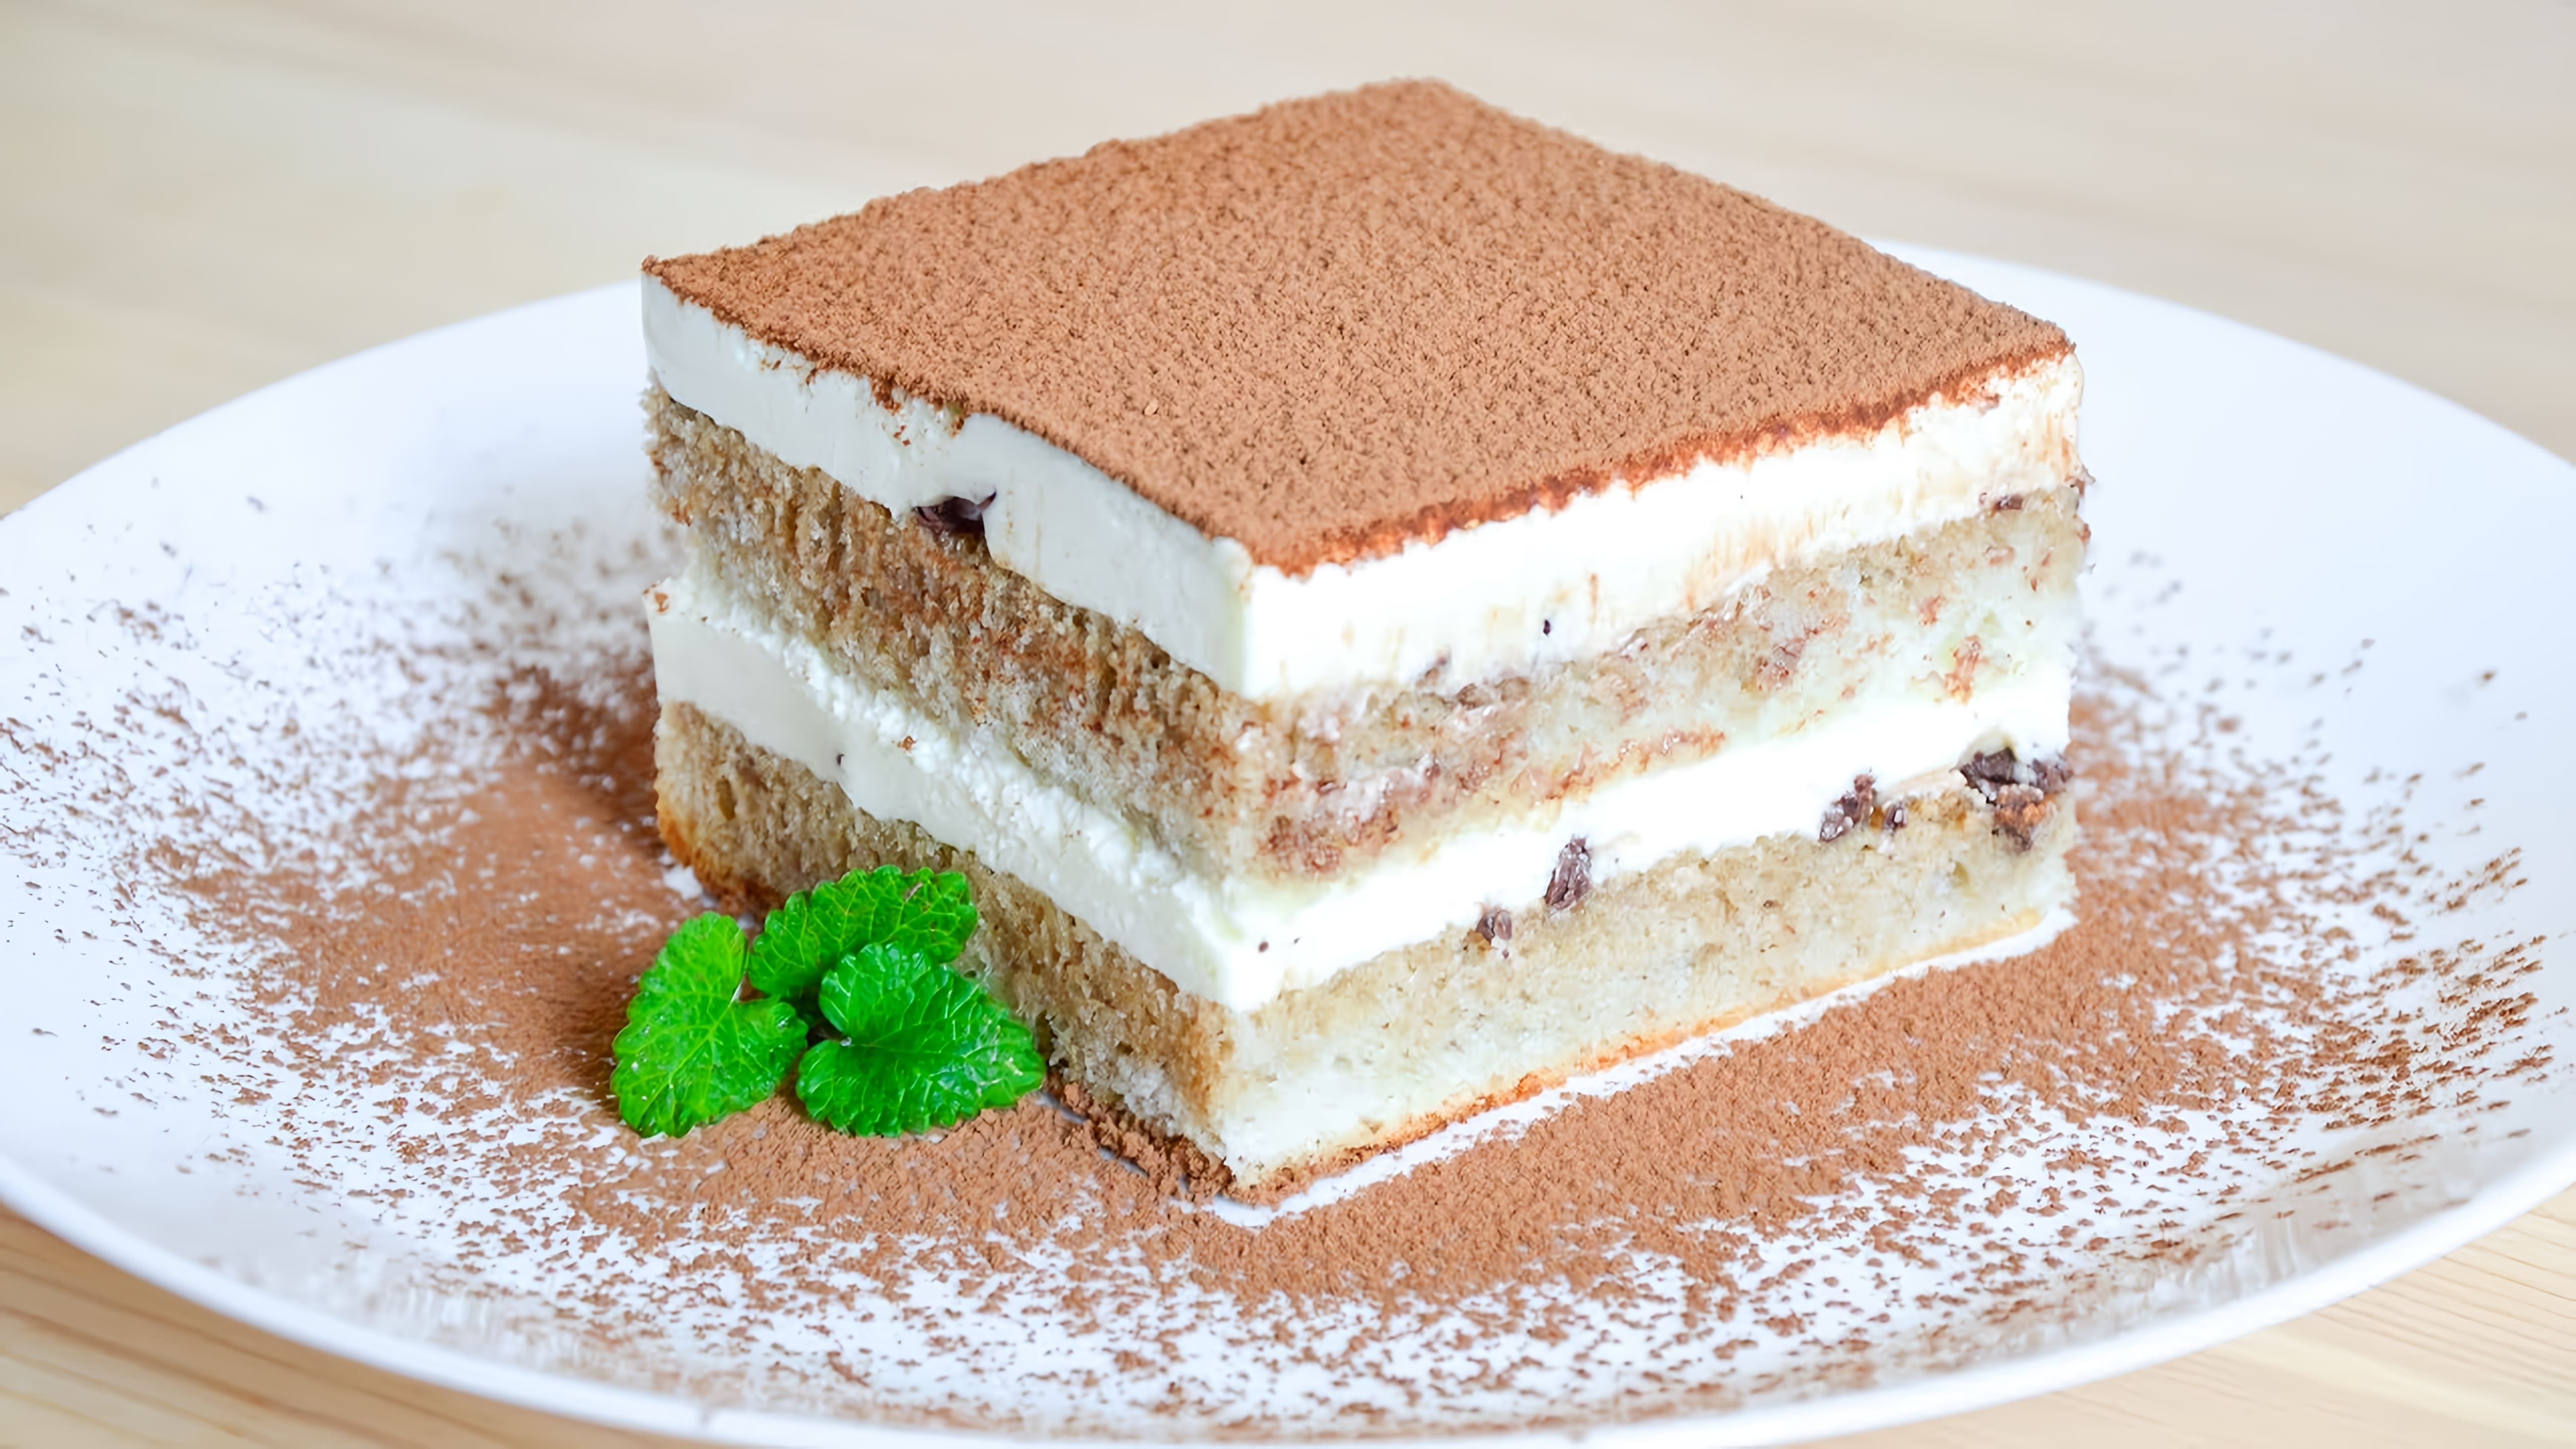 Видео-ролик "Торт Тирамису ☆ Тает во рту! ☆ Cake Tiramisu" представляет собой процесс приготовления и дегустации знаменитого итальянского десерта